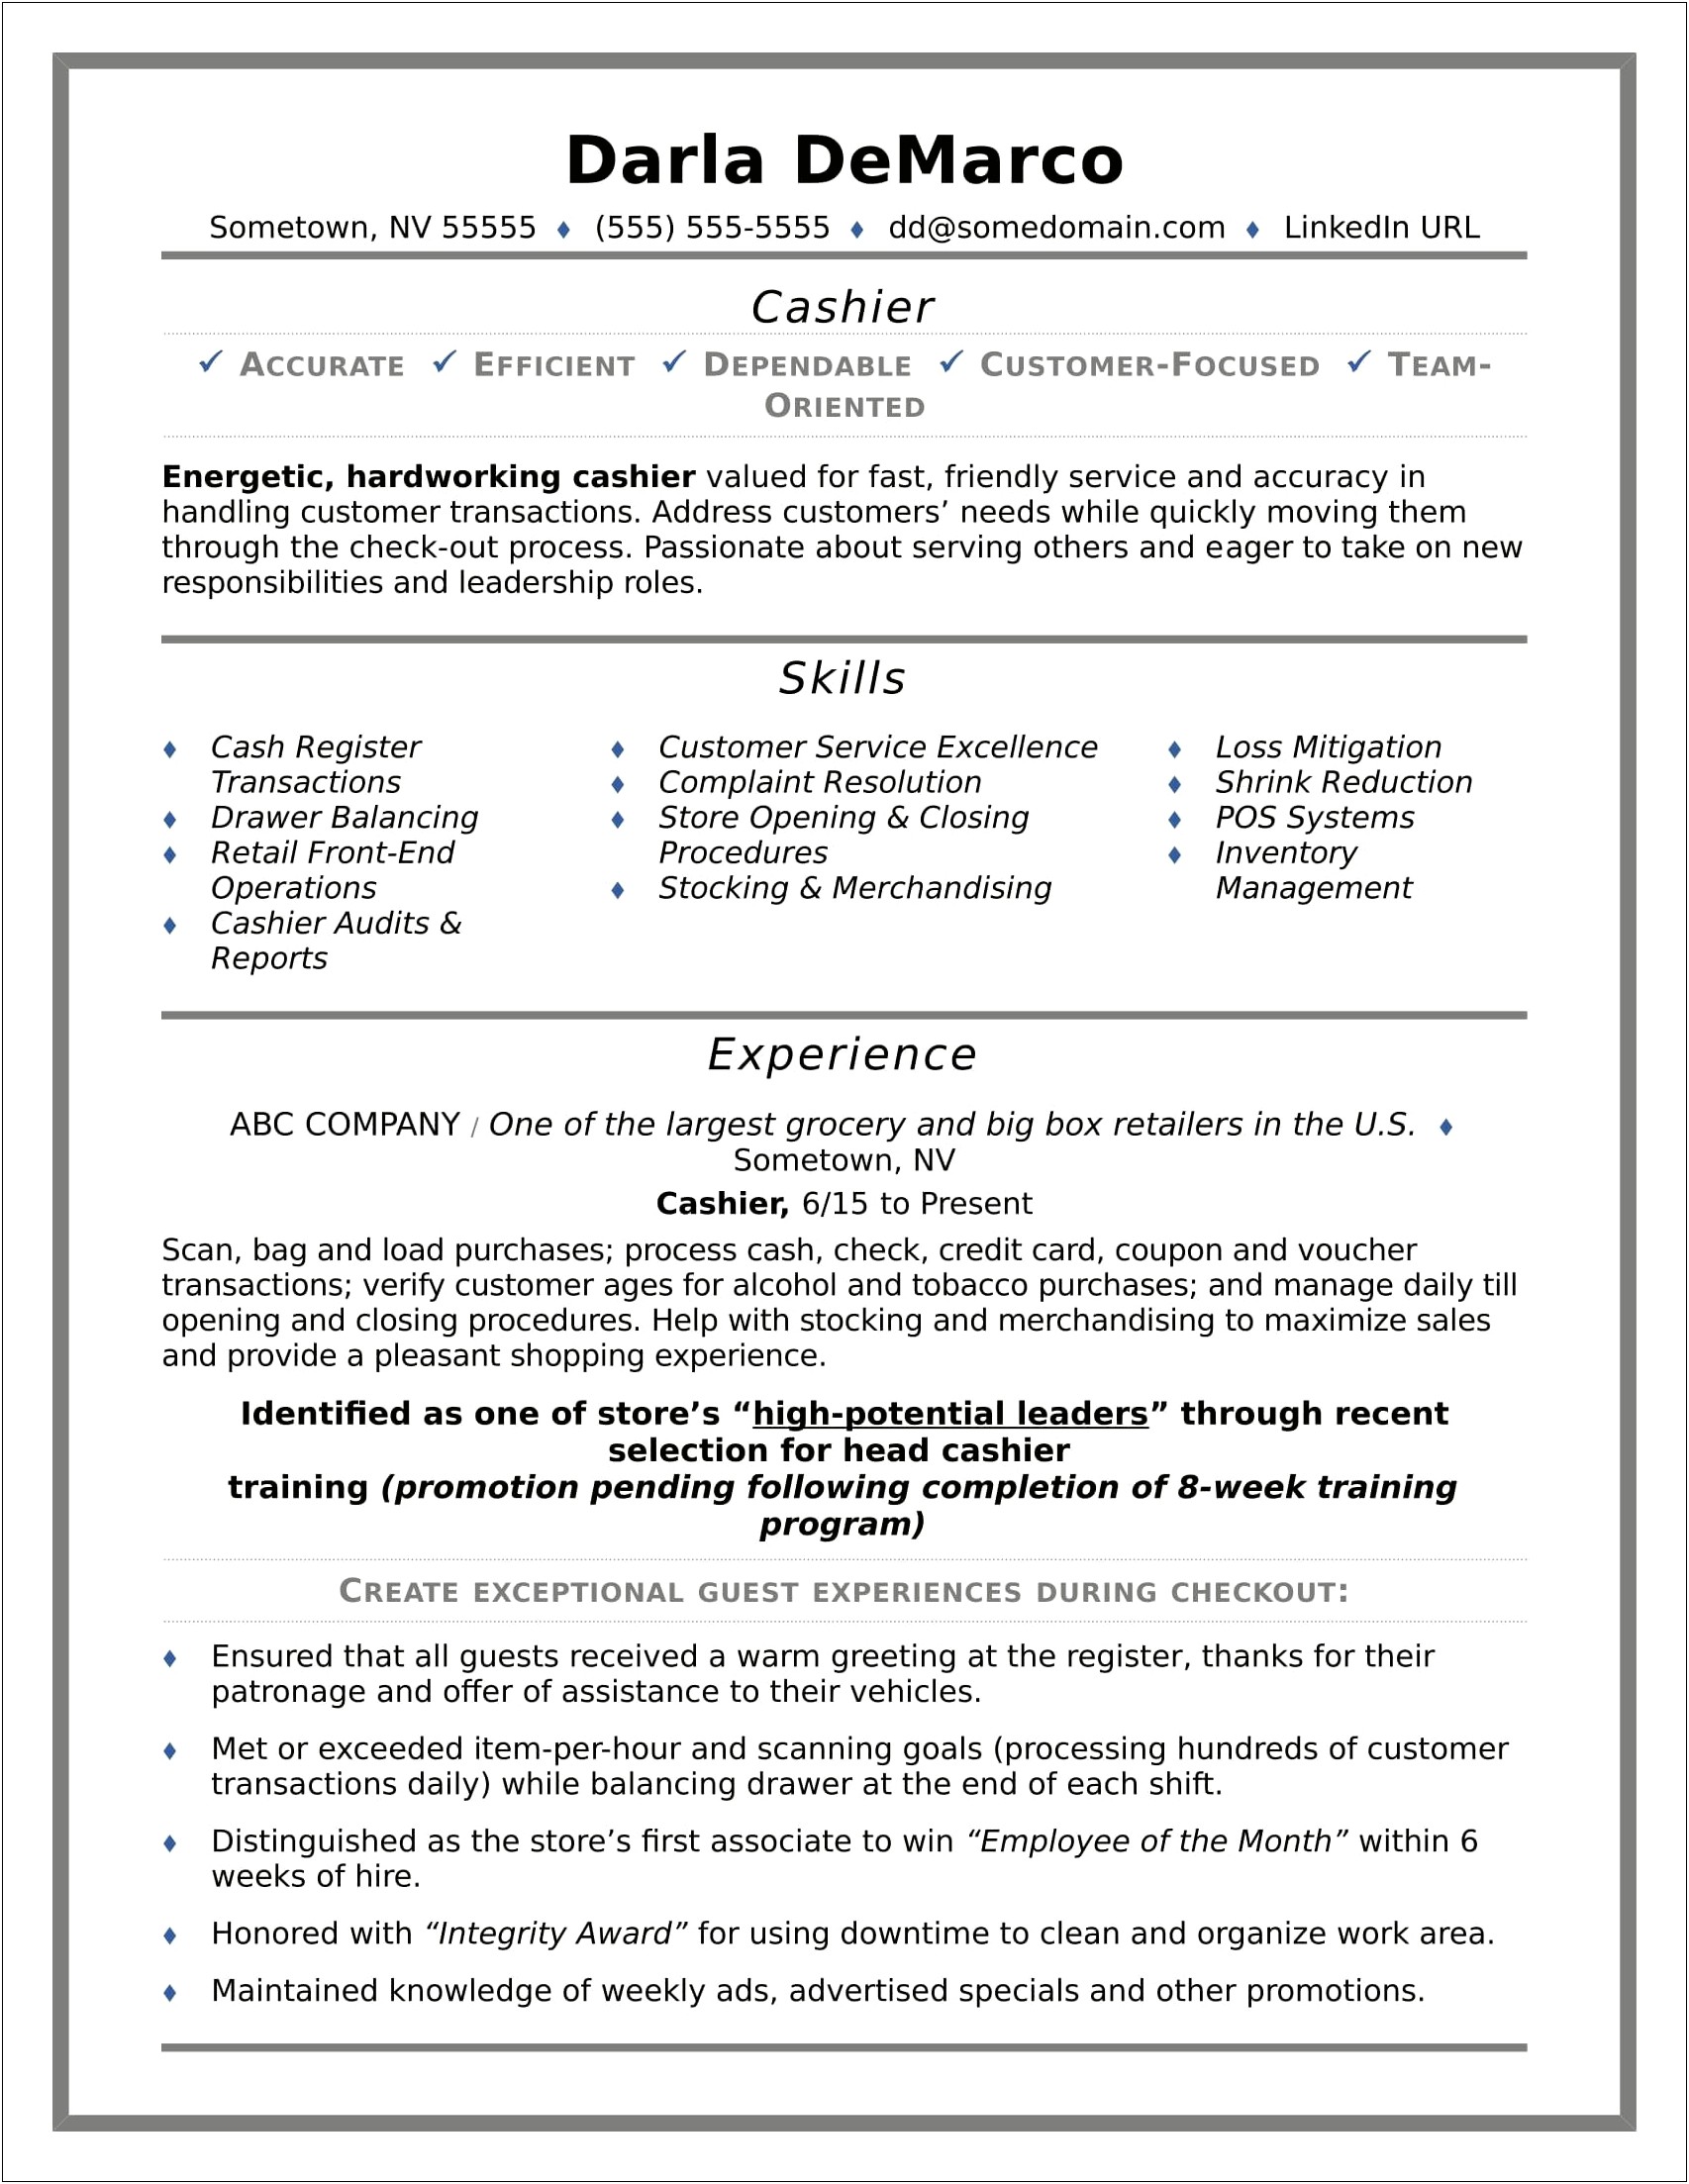 Resume Focused To Job Post